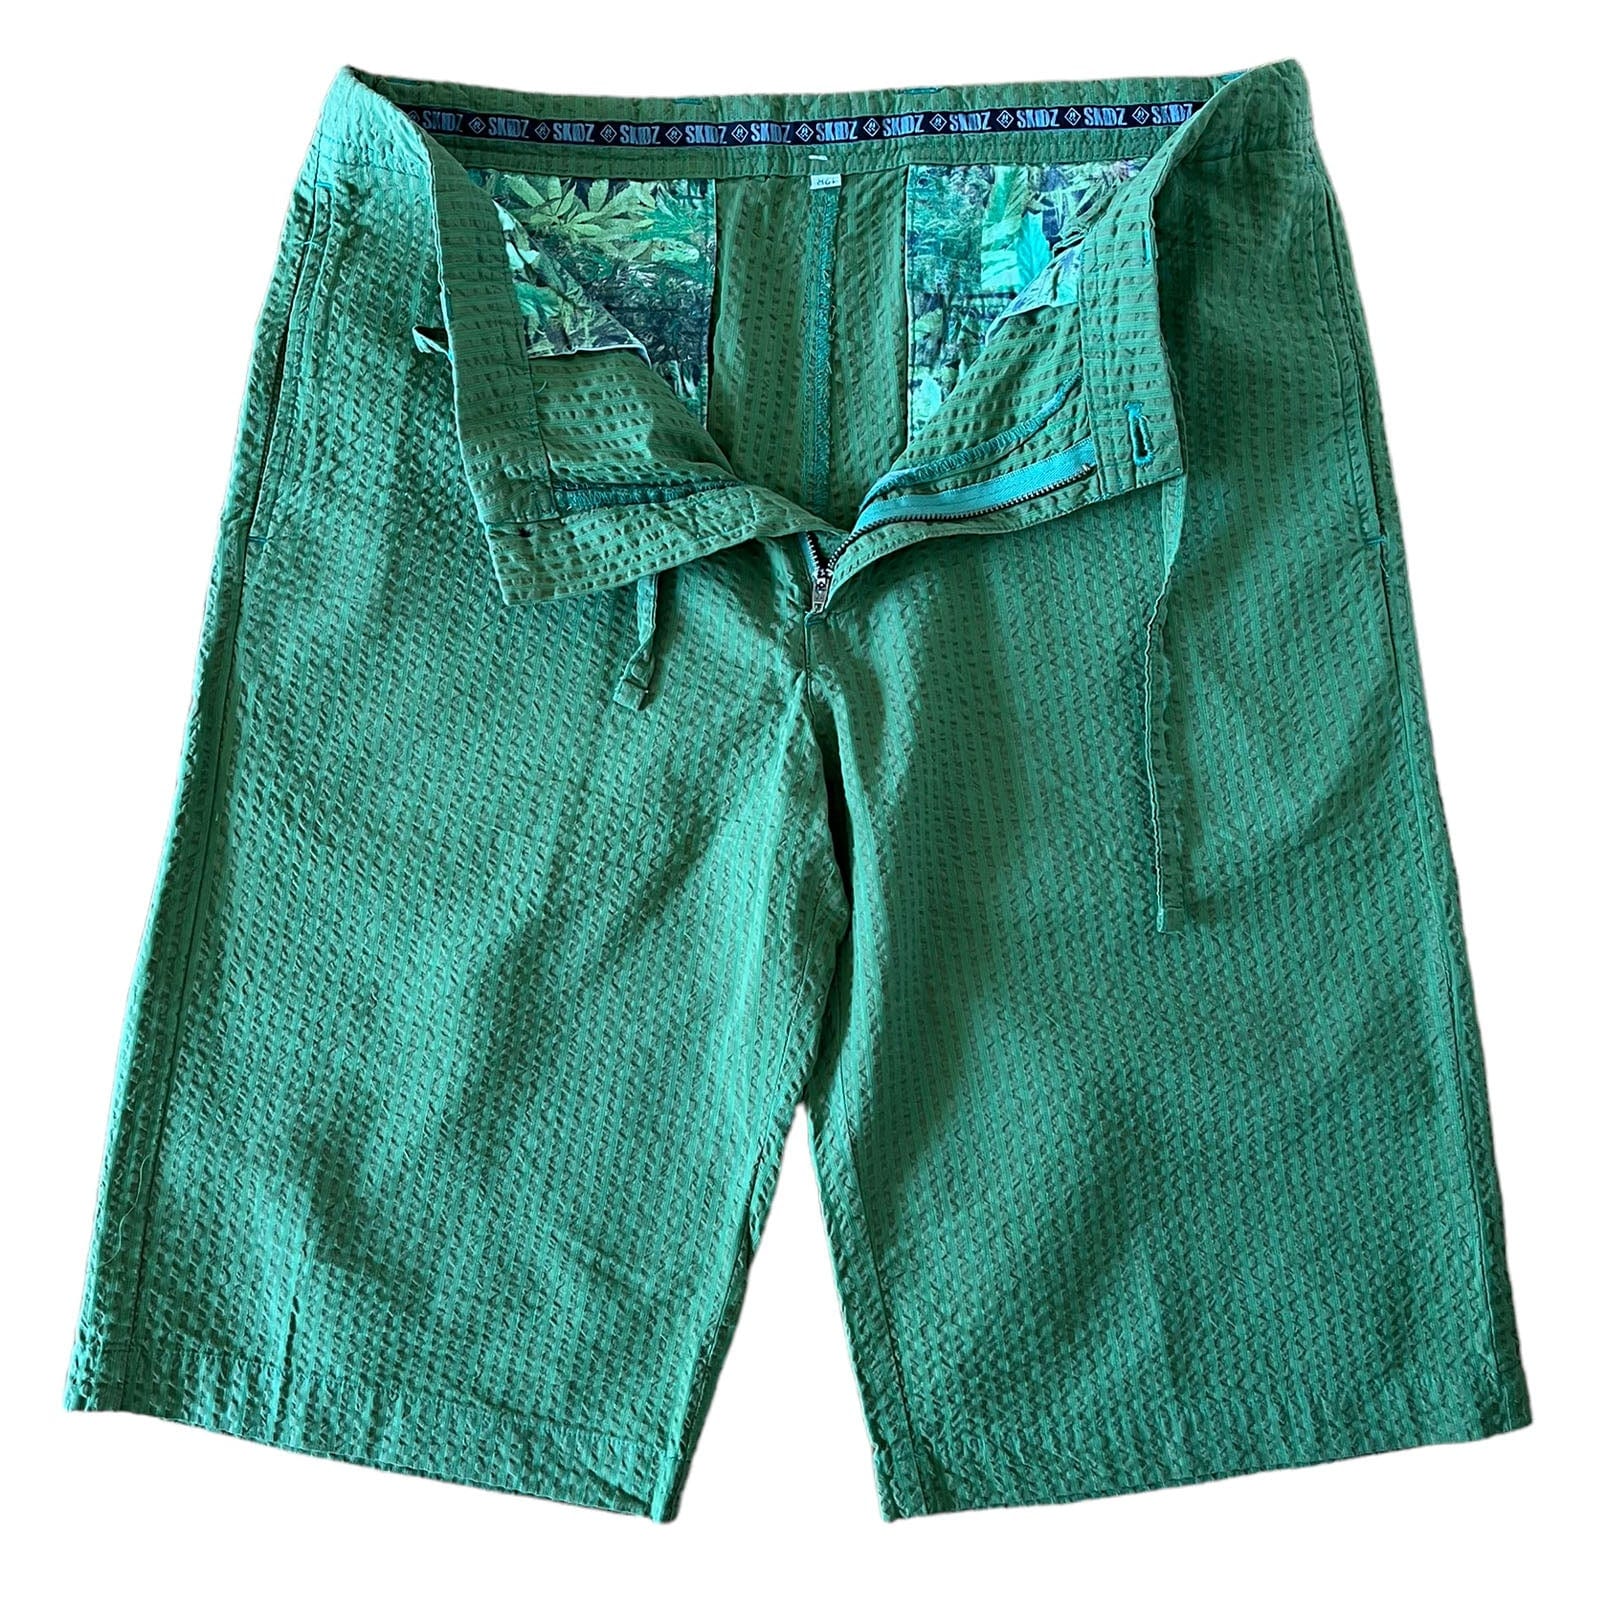 SKIDZ Shorts Seersucker Shorts Vol2 - Green Striped